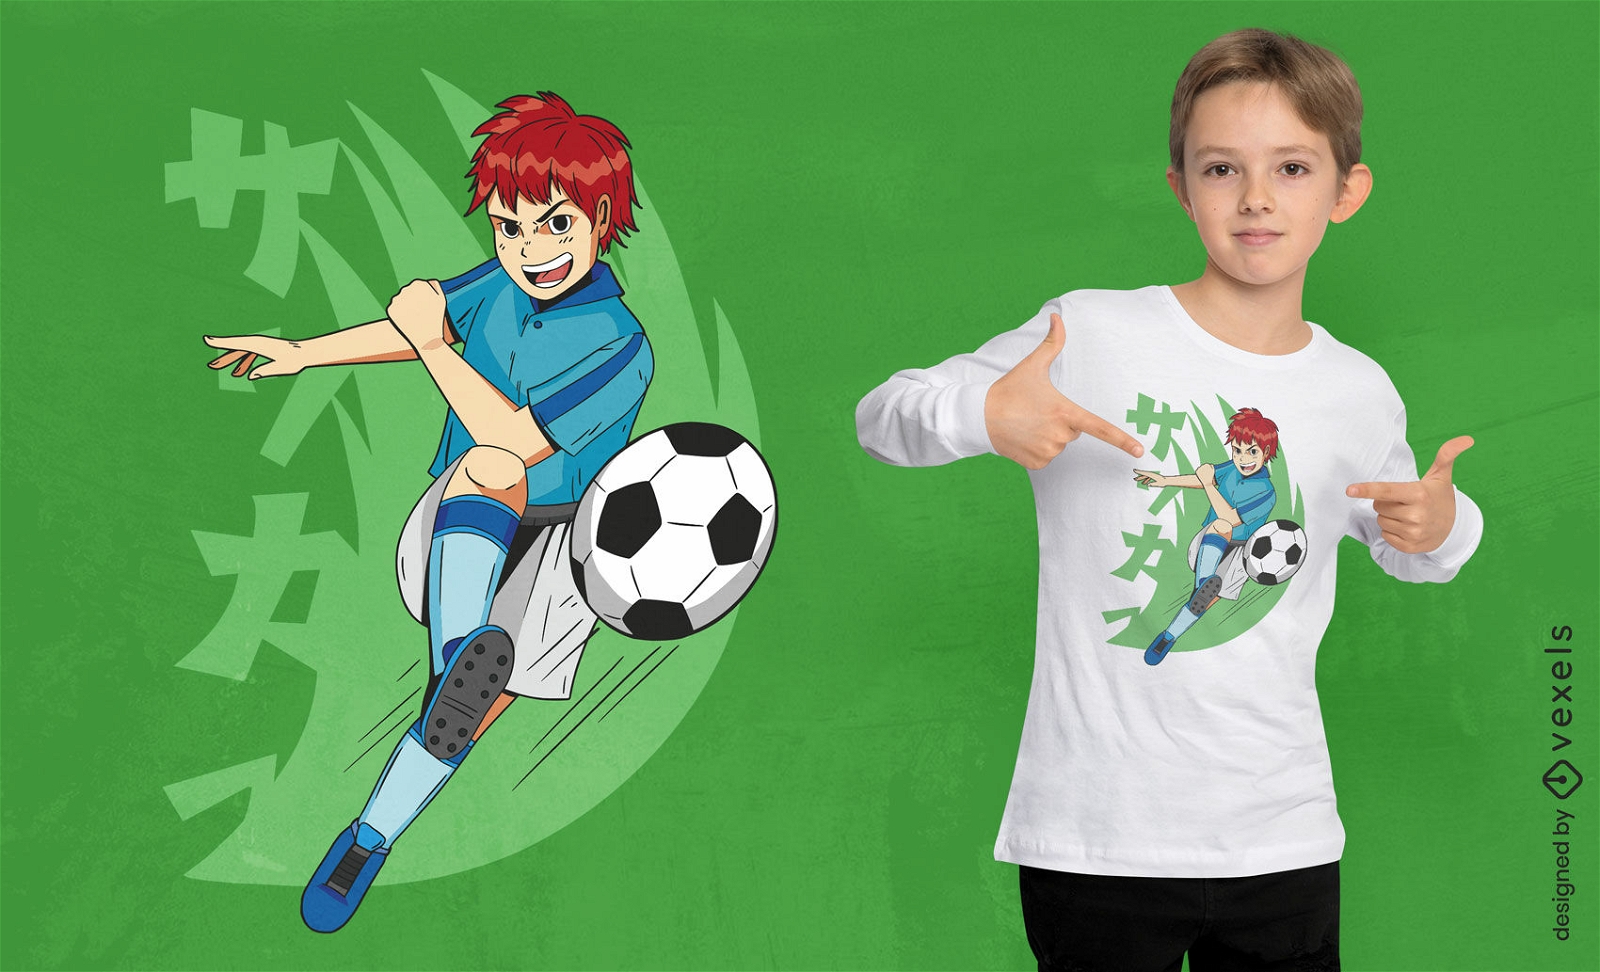 Dise?o de camiseta de anime boy playing soccer